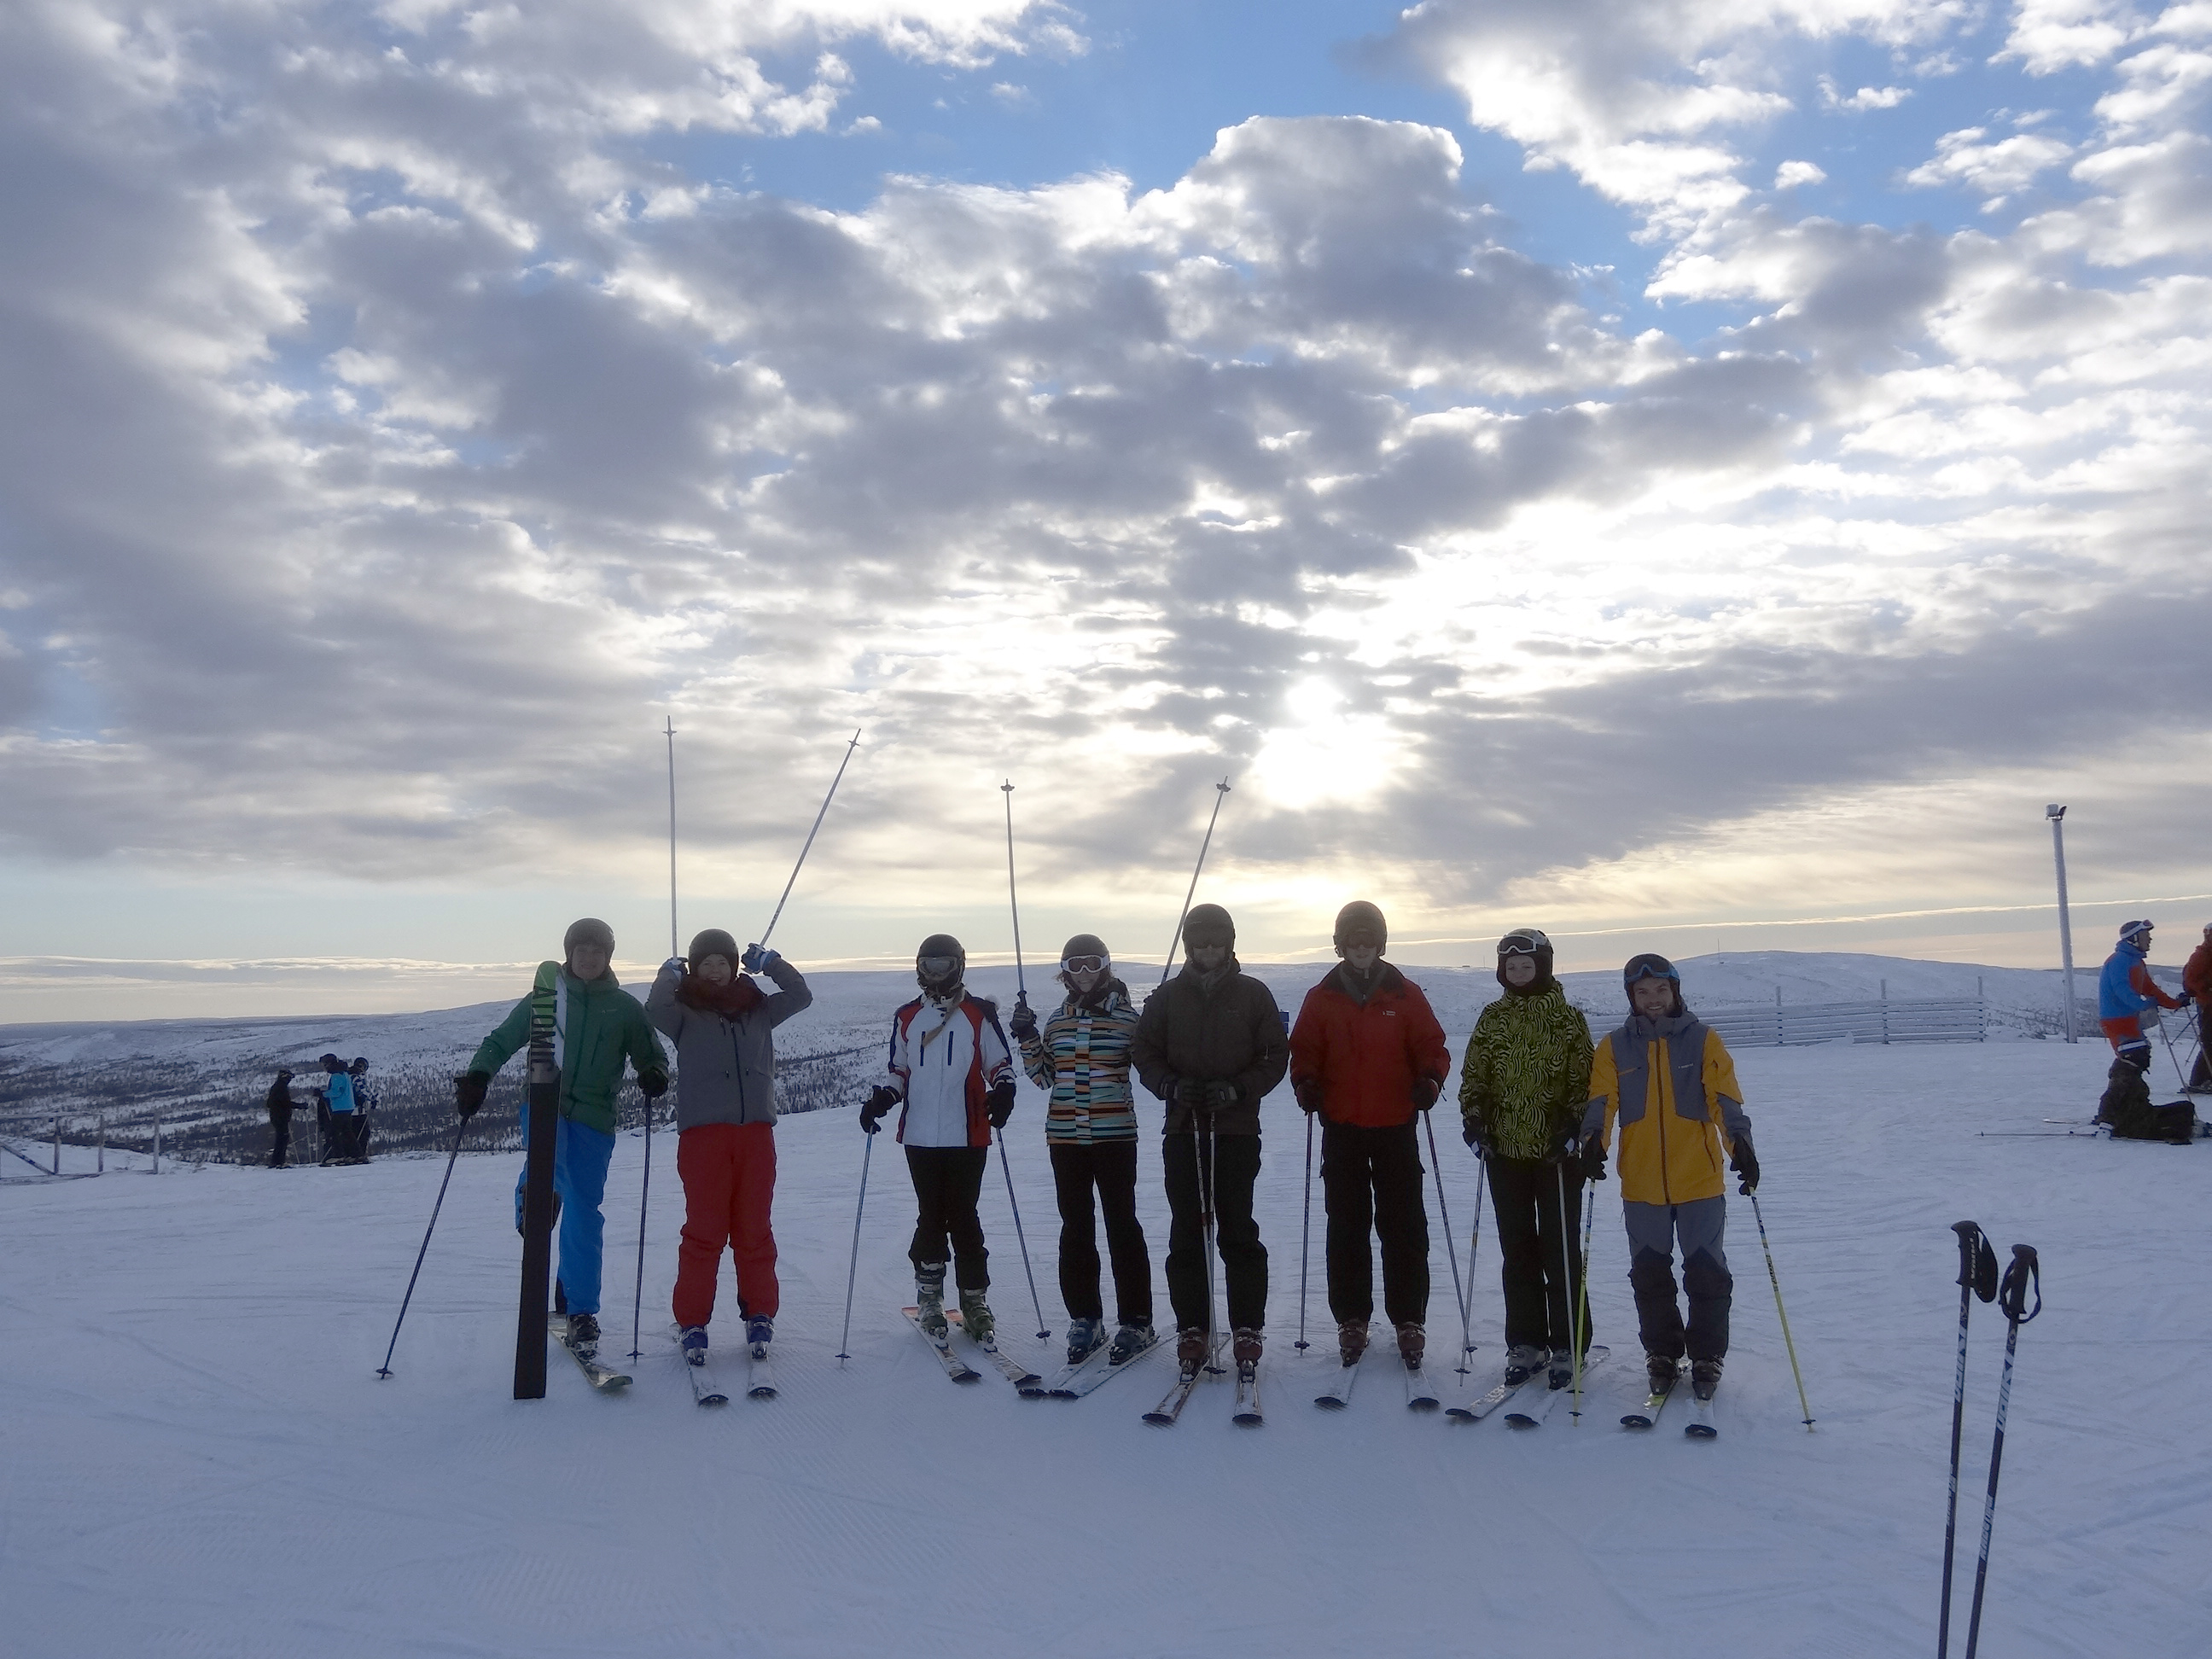 Elena Hamm mit Kommilitonen auf der „Skiweek“ in Vemdalen, eine Mischung aus Studentenparty und Wintersportereignis.